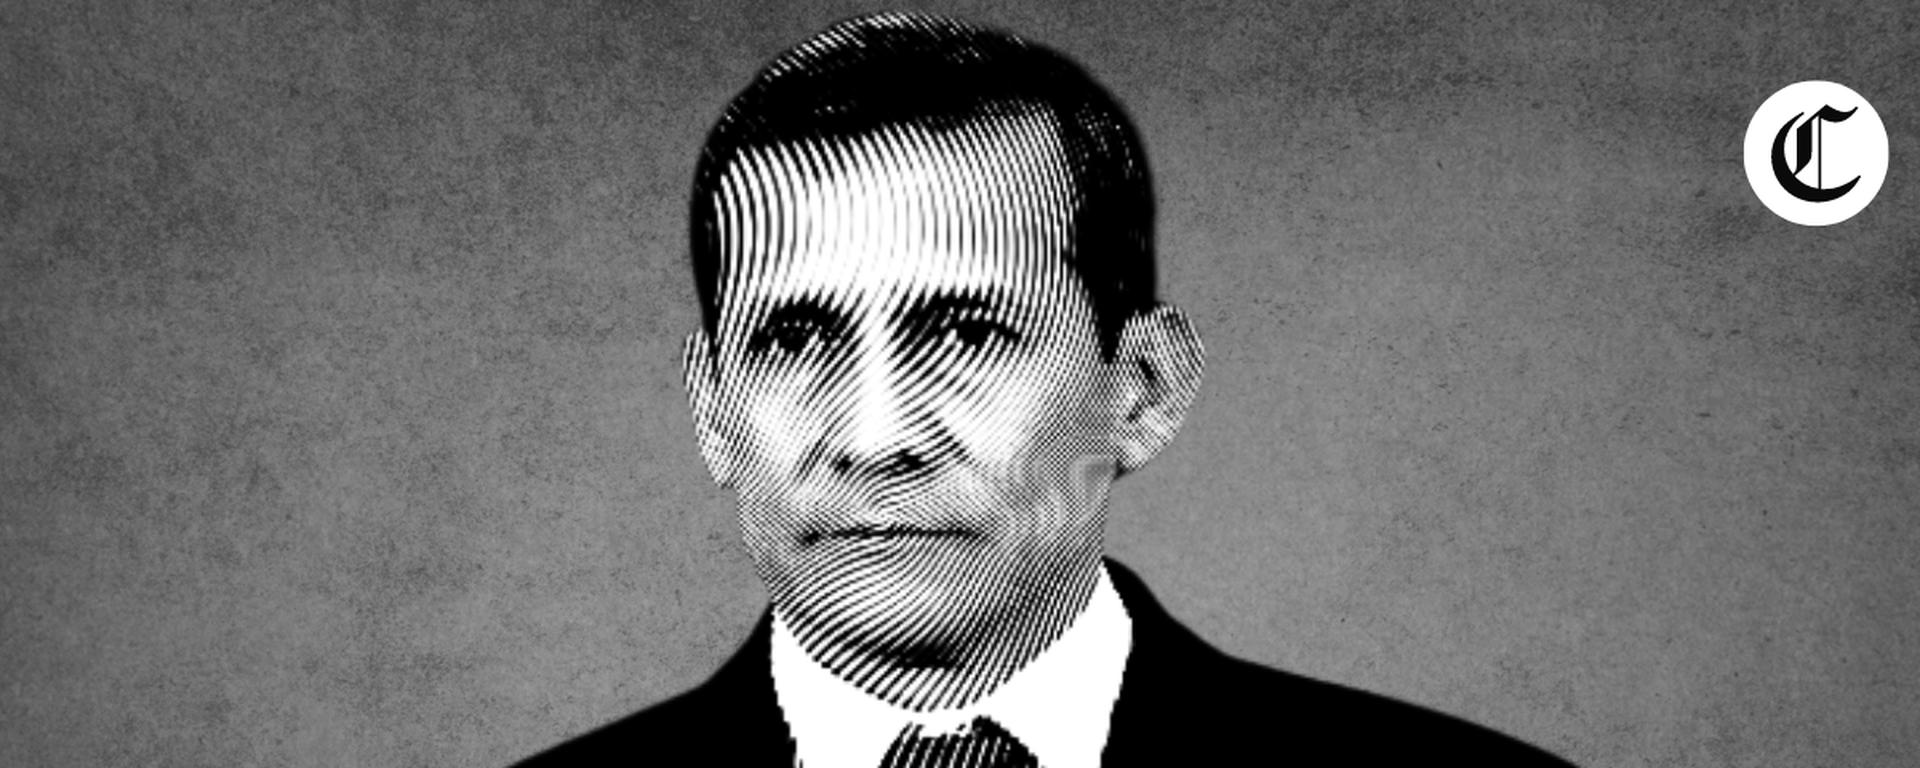 Ollanta Humala: en suspenso declaración de Jorge Barata y otros directivos de Odebrecht en juicio oral